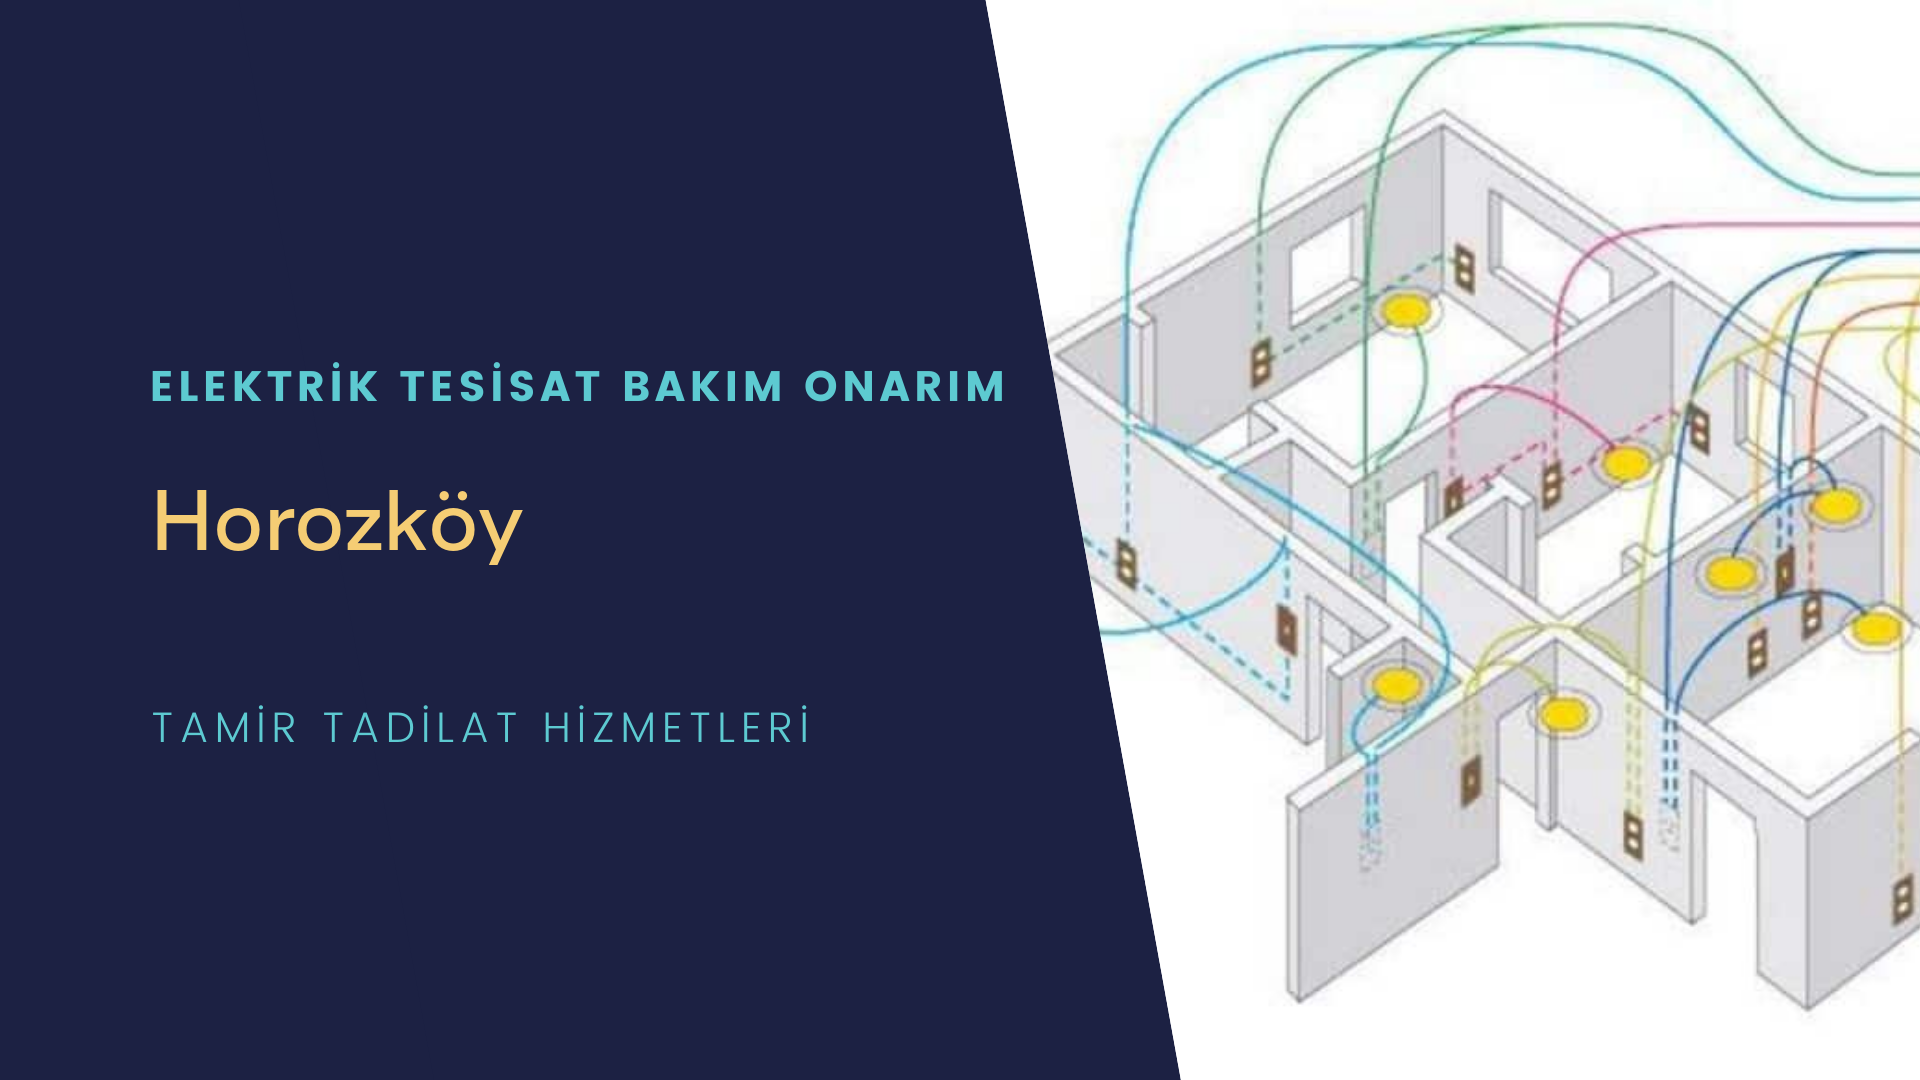 Horozköy'de elektrik tesisatı ustalarımı arıyorsunuz doğru adrestenizi Horozköy elektrik tesisatı ustalarımız 7/24 sizlere hizmet vermekten mutluluk duyar.